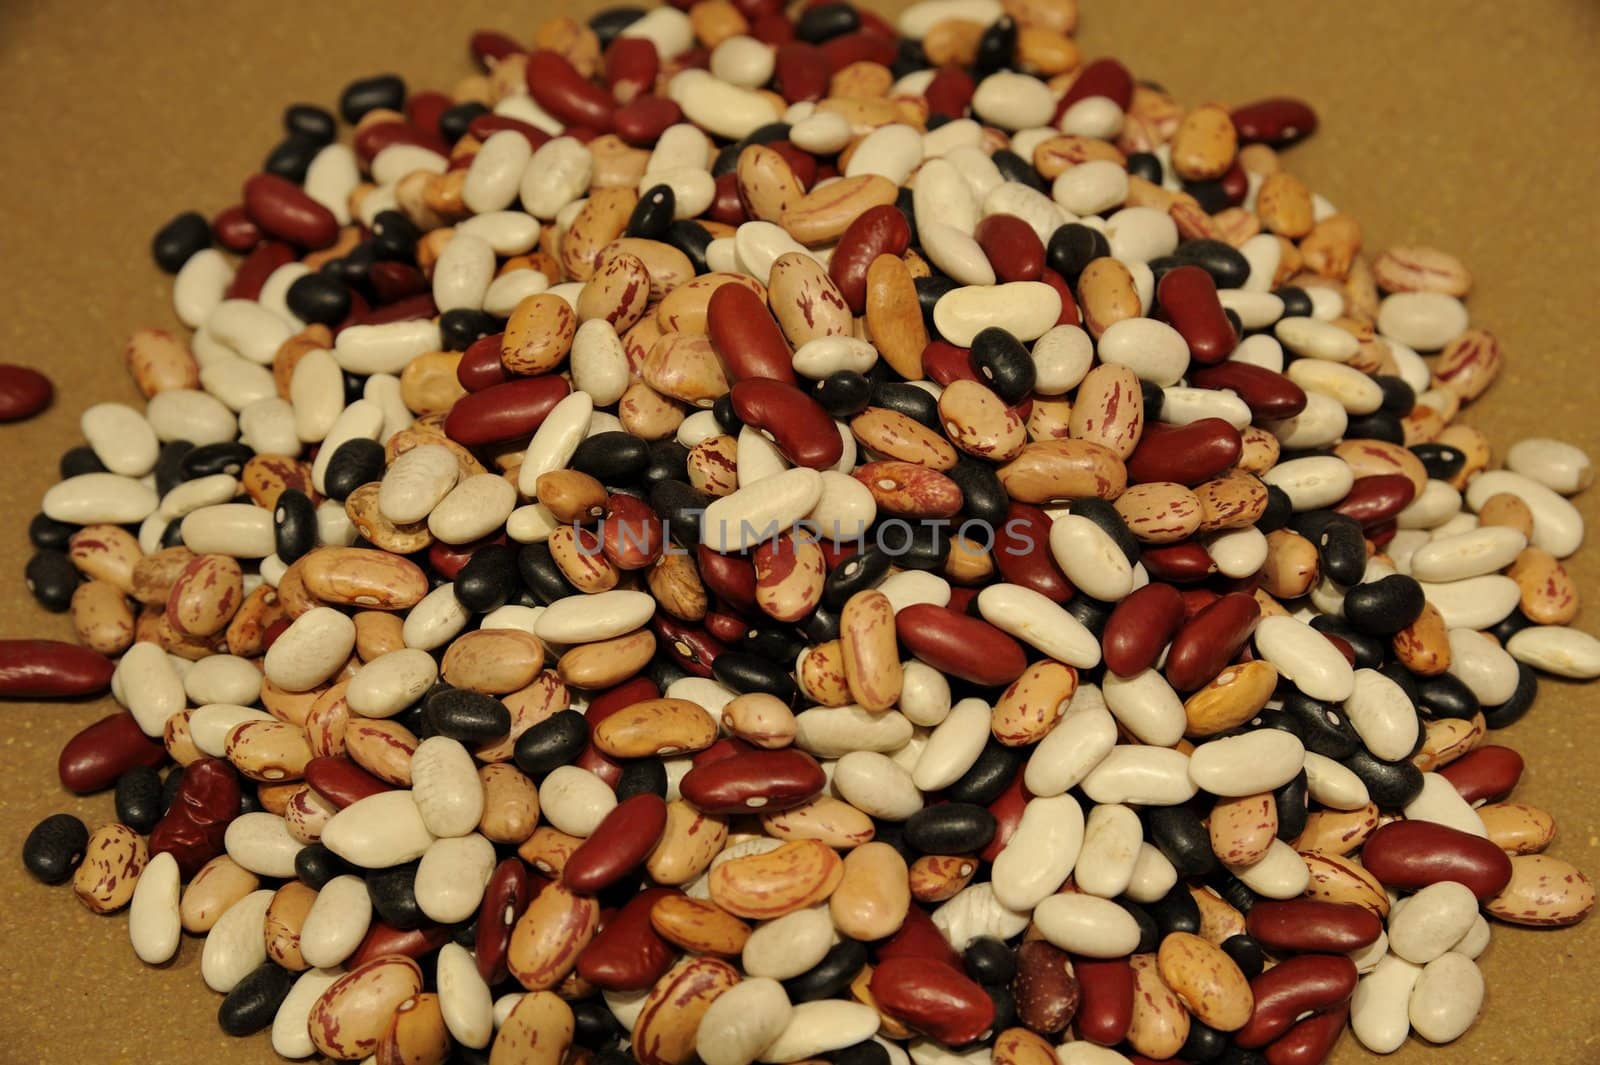 Mixed beans by mizio1970